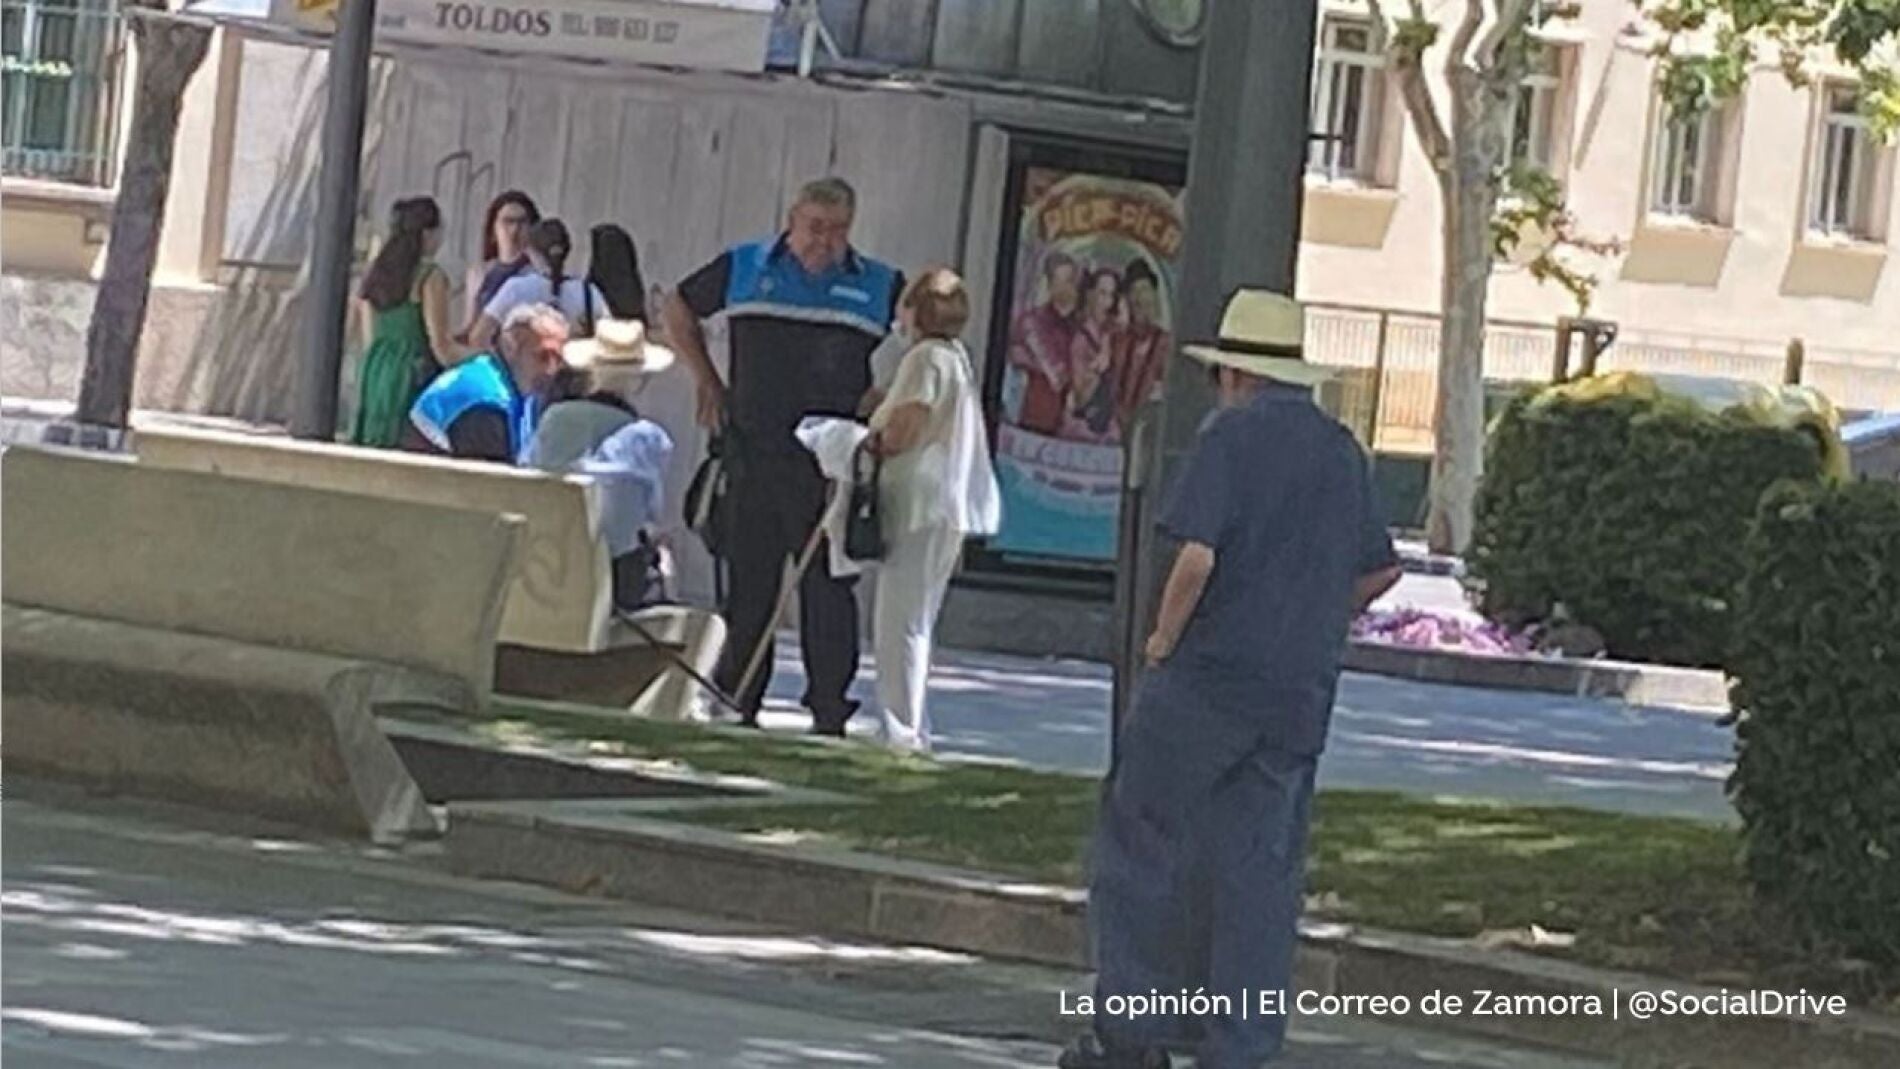 Una pareja de ancianos practica sexo oral a plena luz del día en una plaza de Zamora